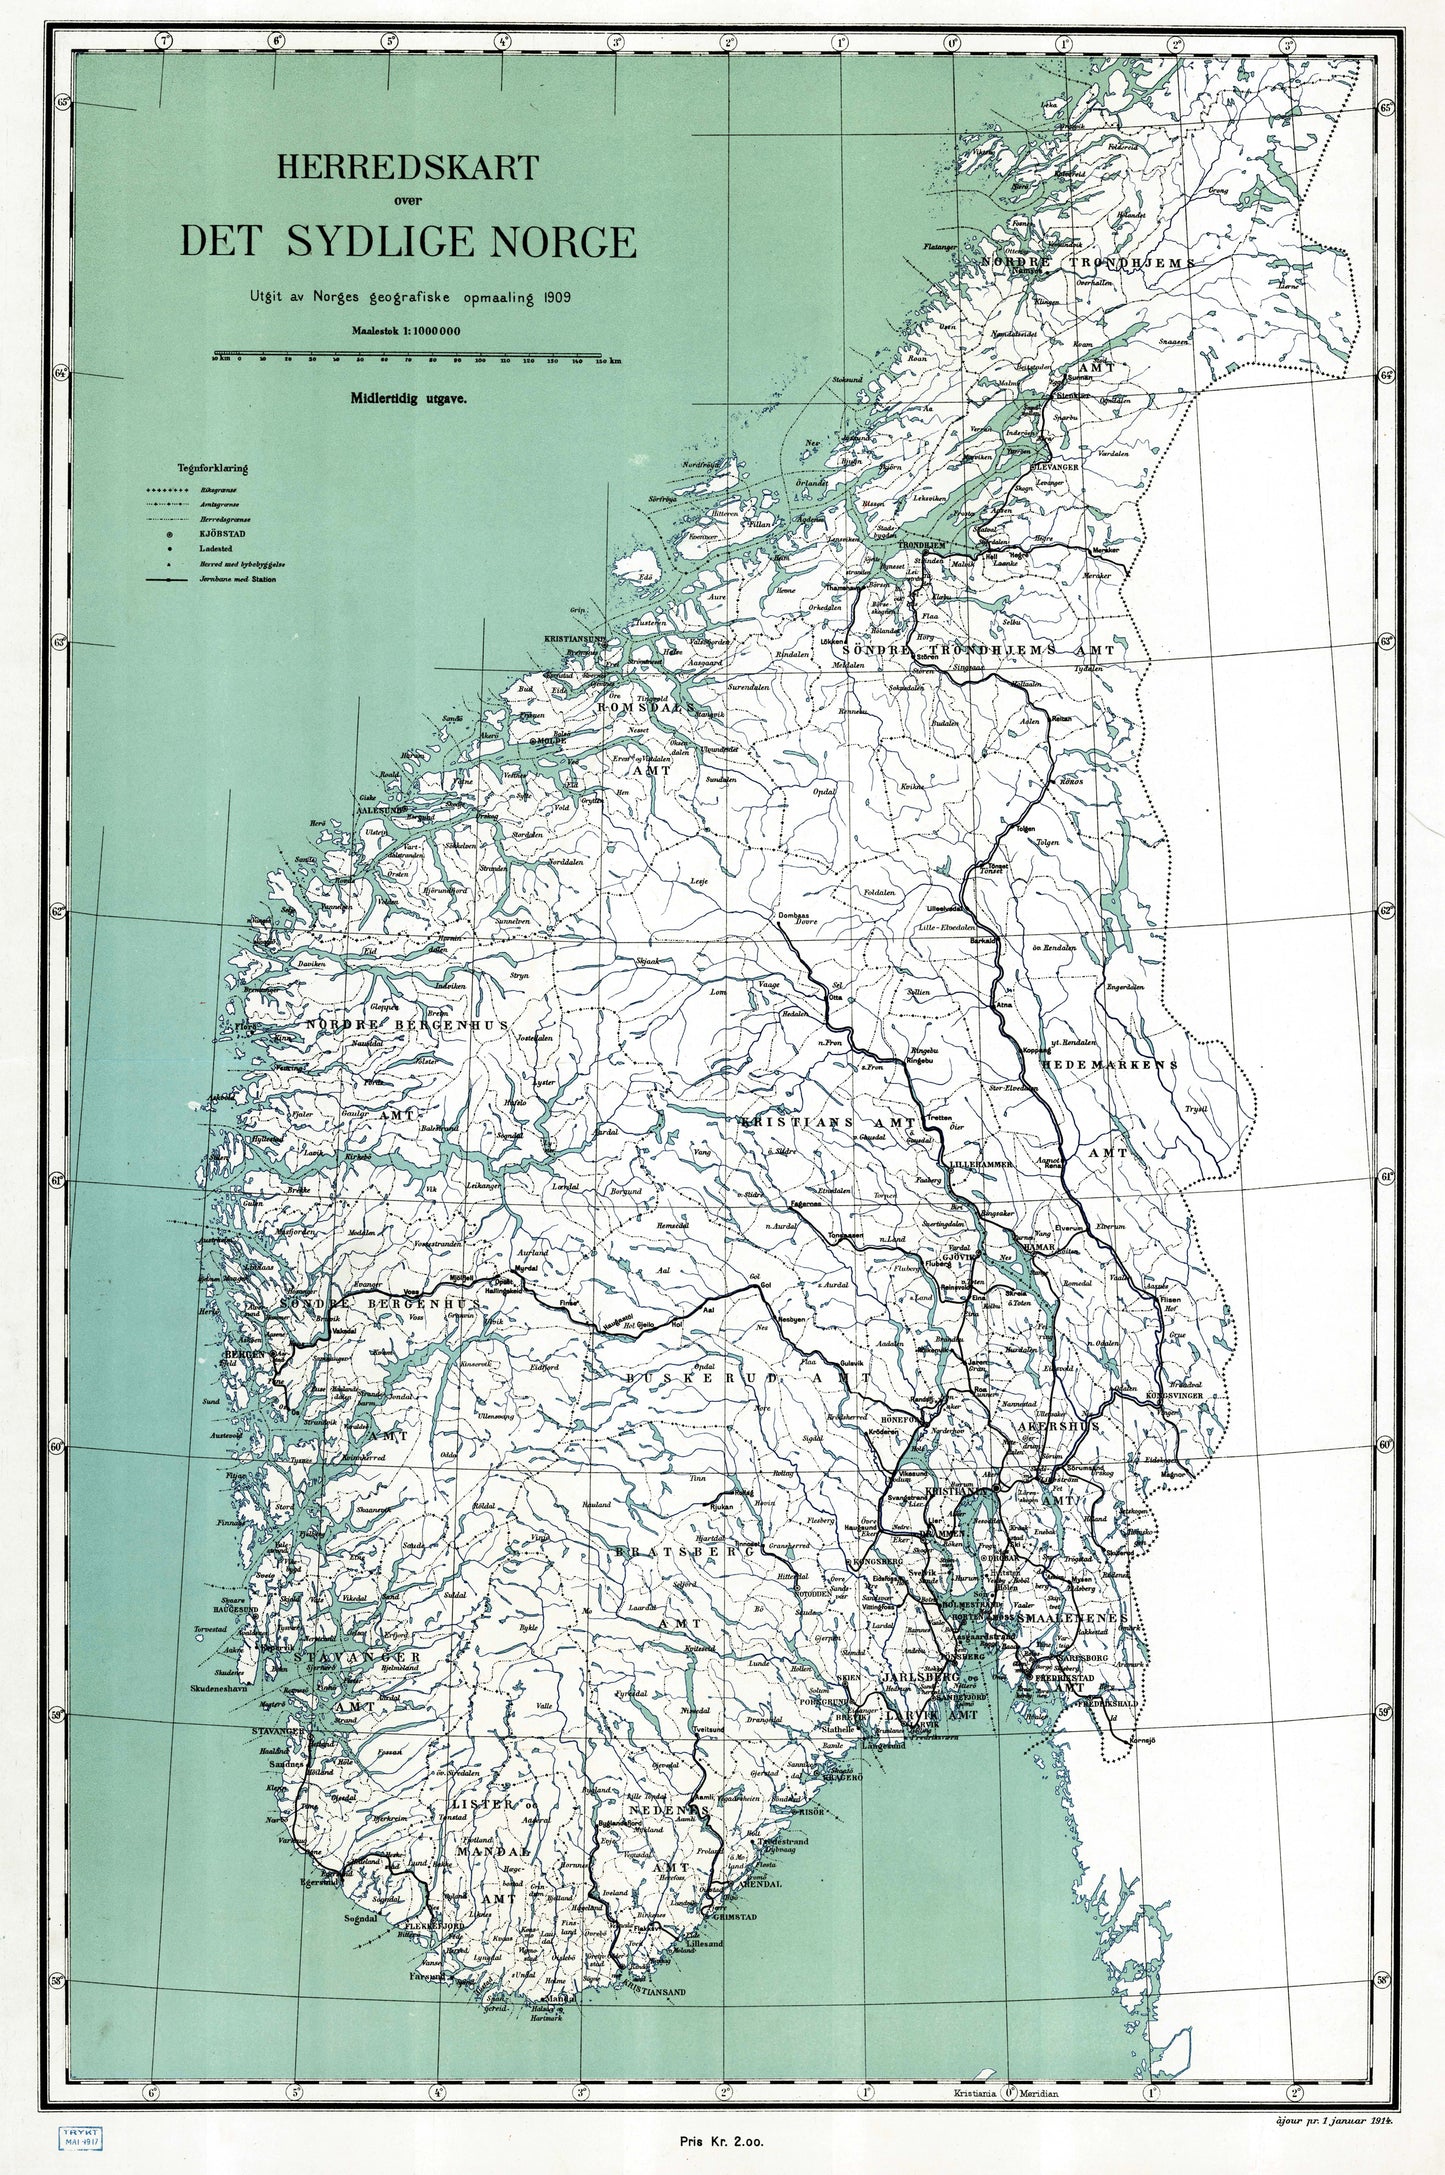 Herredskart over det sydlige Norge: Norge